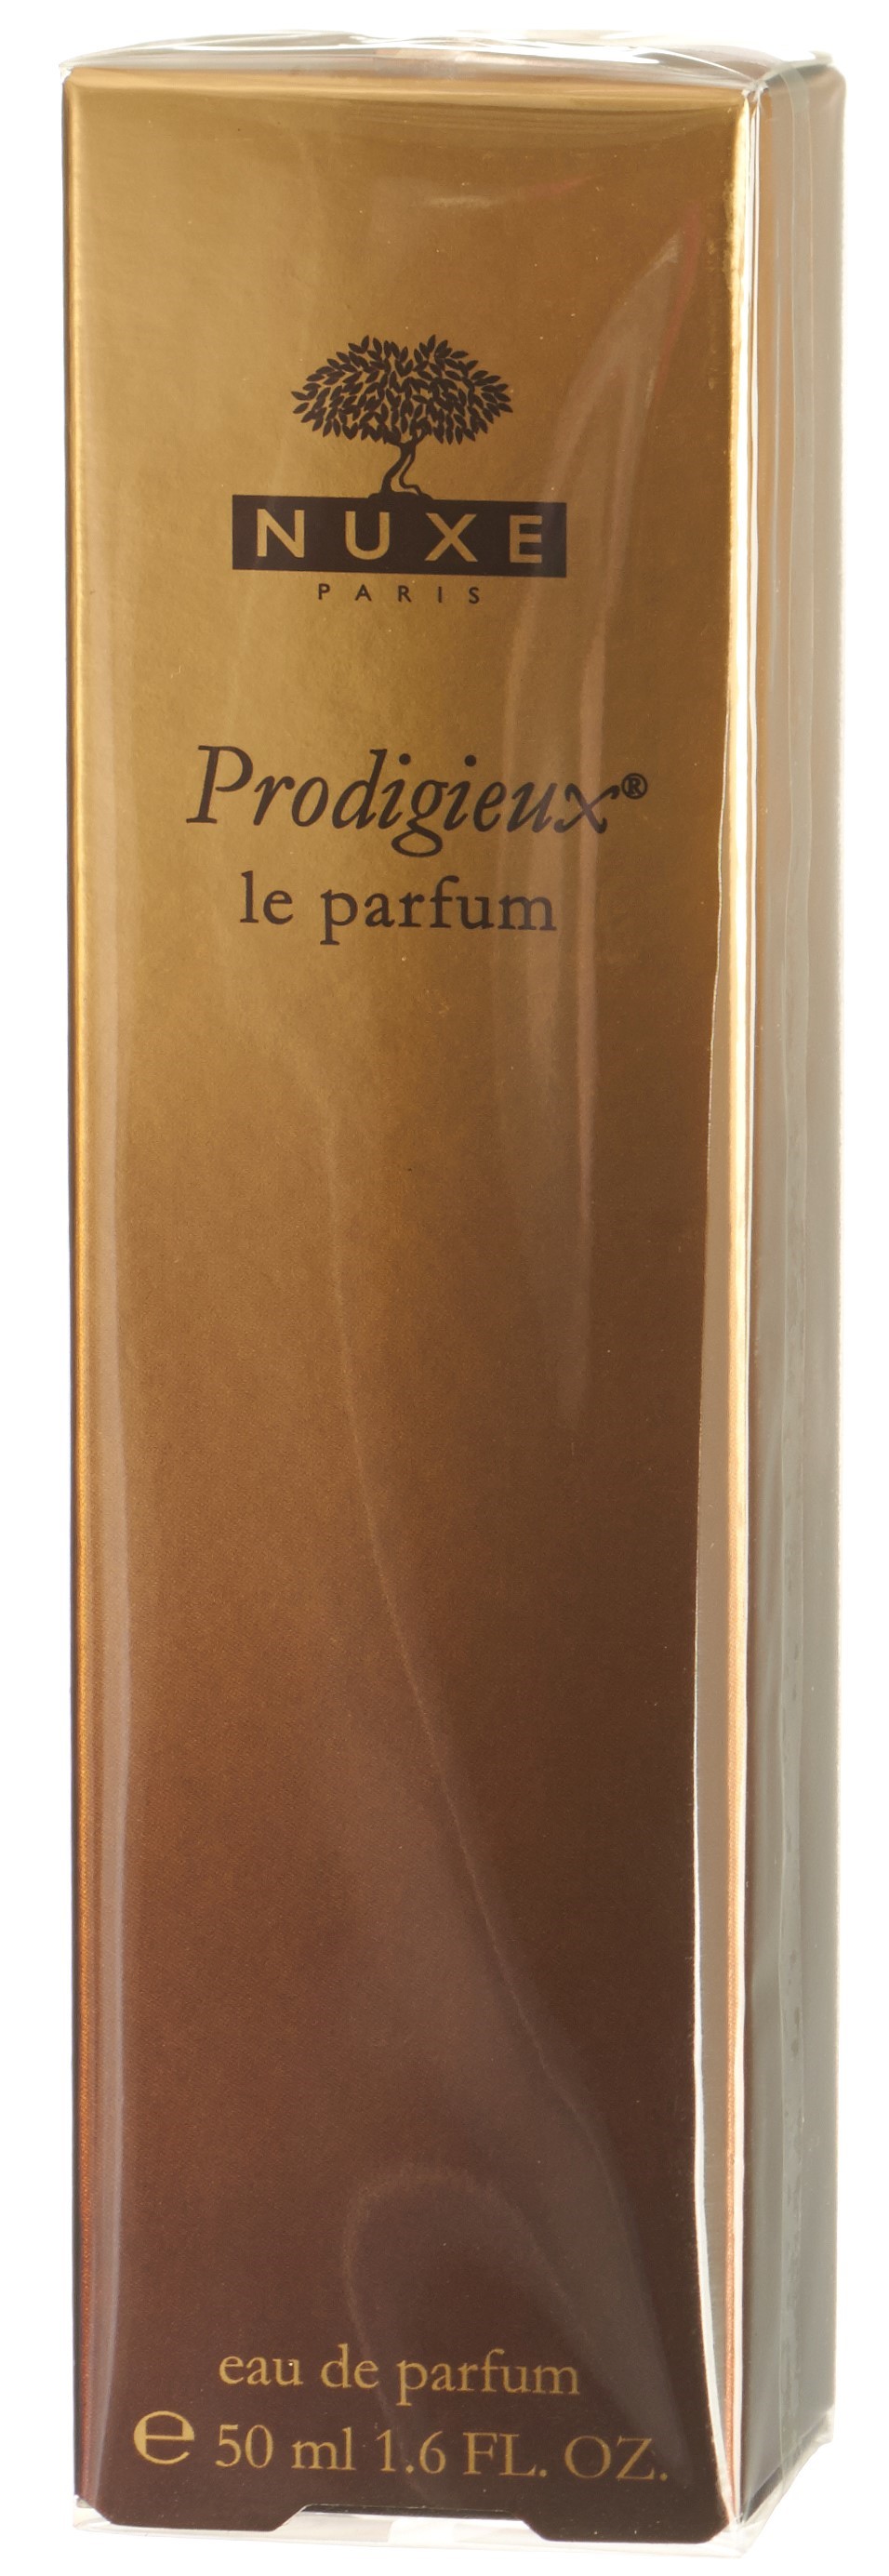 NUXE Prodigieux Le Parfum Spr 50 ml